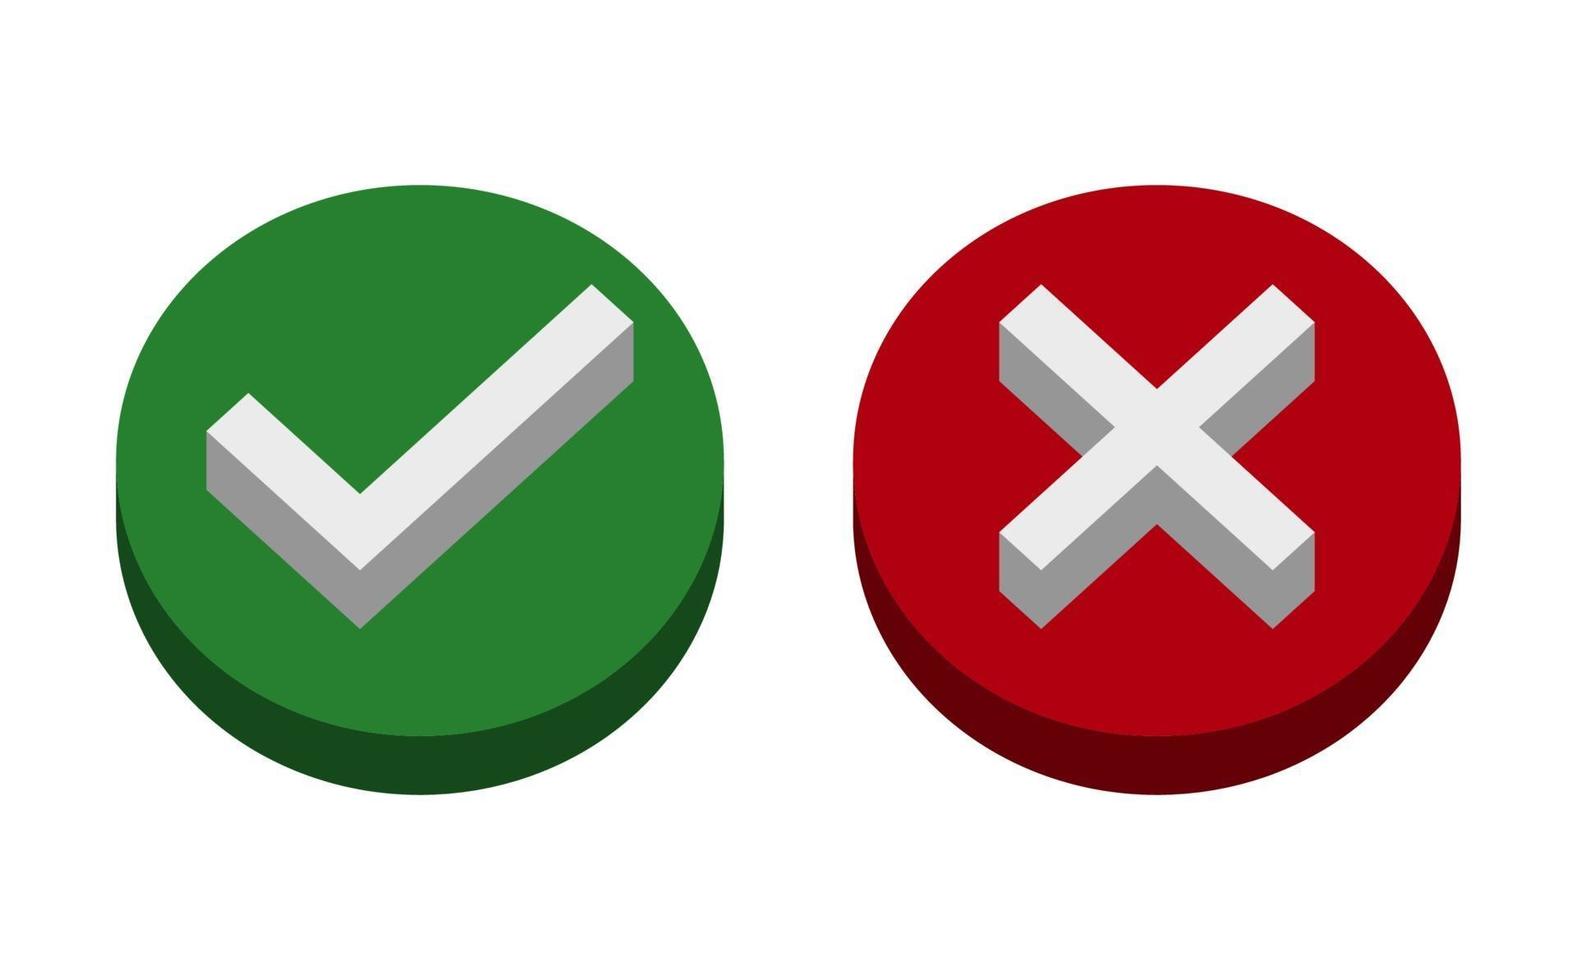 Symbol ja oder nein Symbol, grün, 3d, rot auf weißem Hintergrund. Vektorillustration vektor